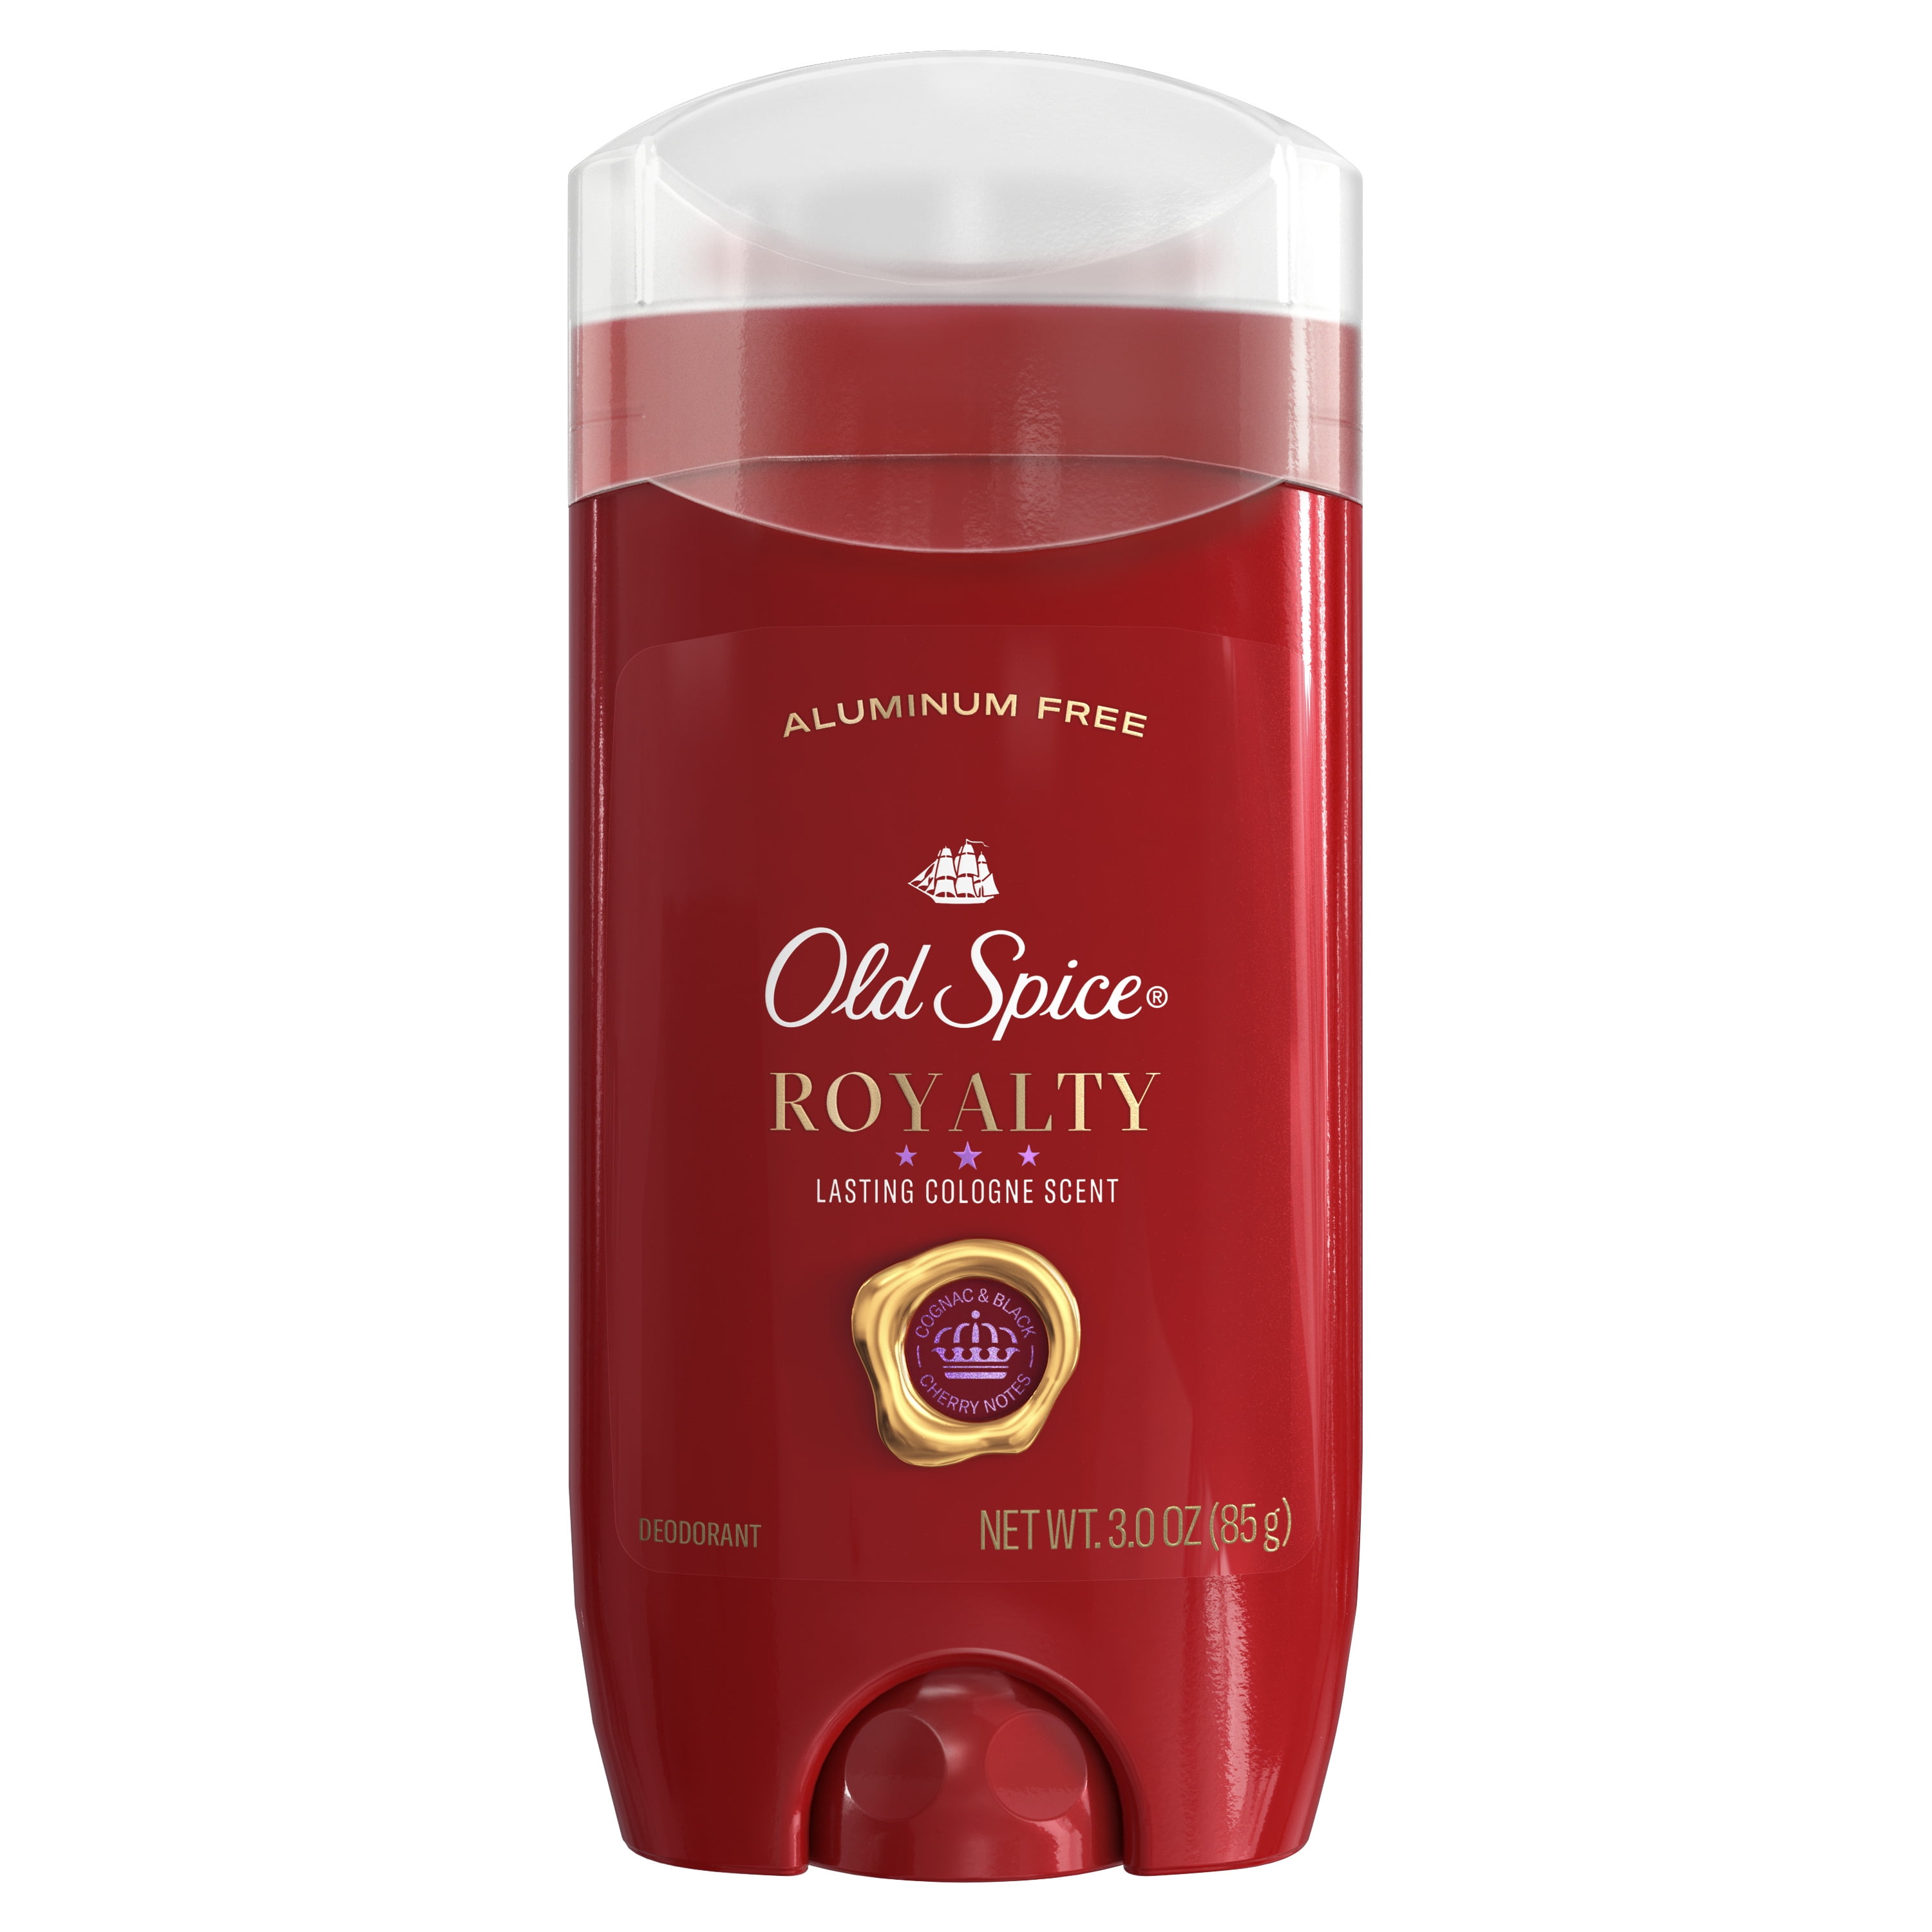 Old Spice Royalty Antiperspirant Deodorant for Men, 2.6 Oz